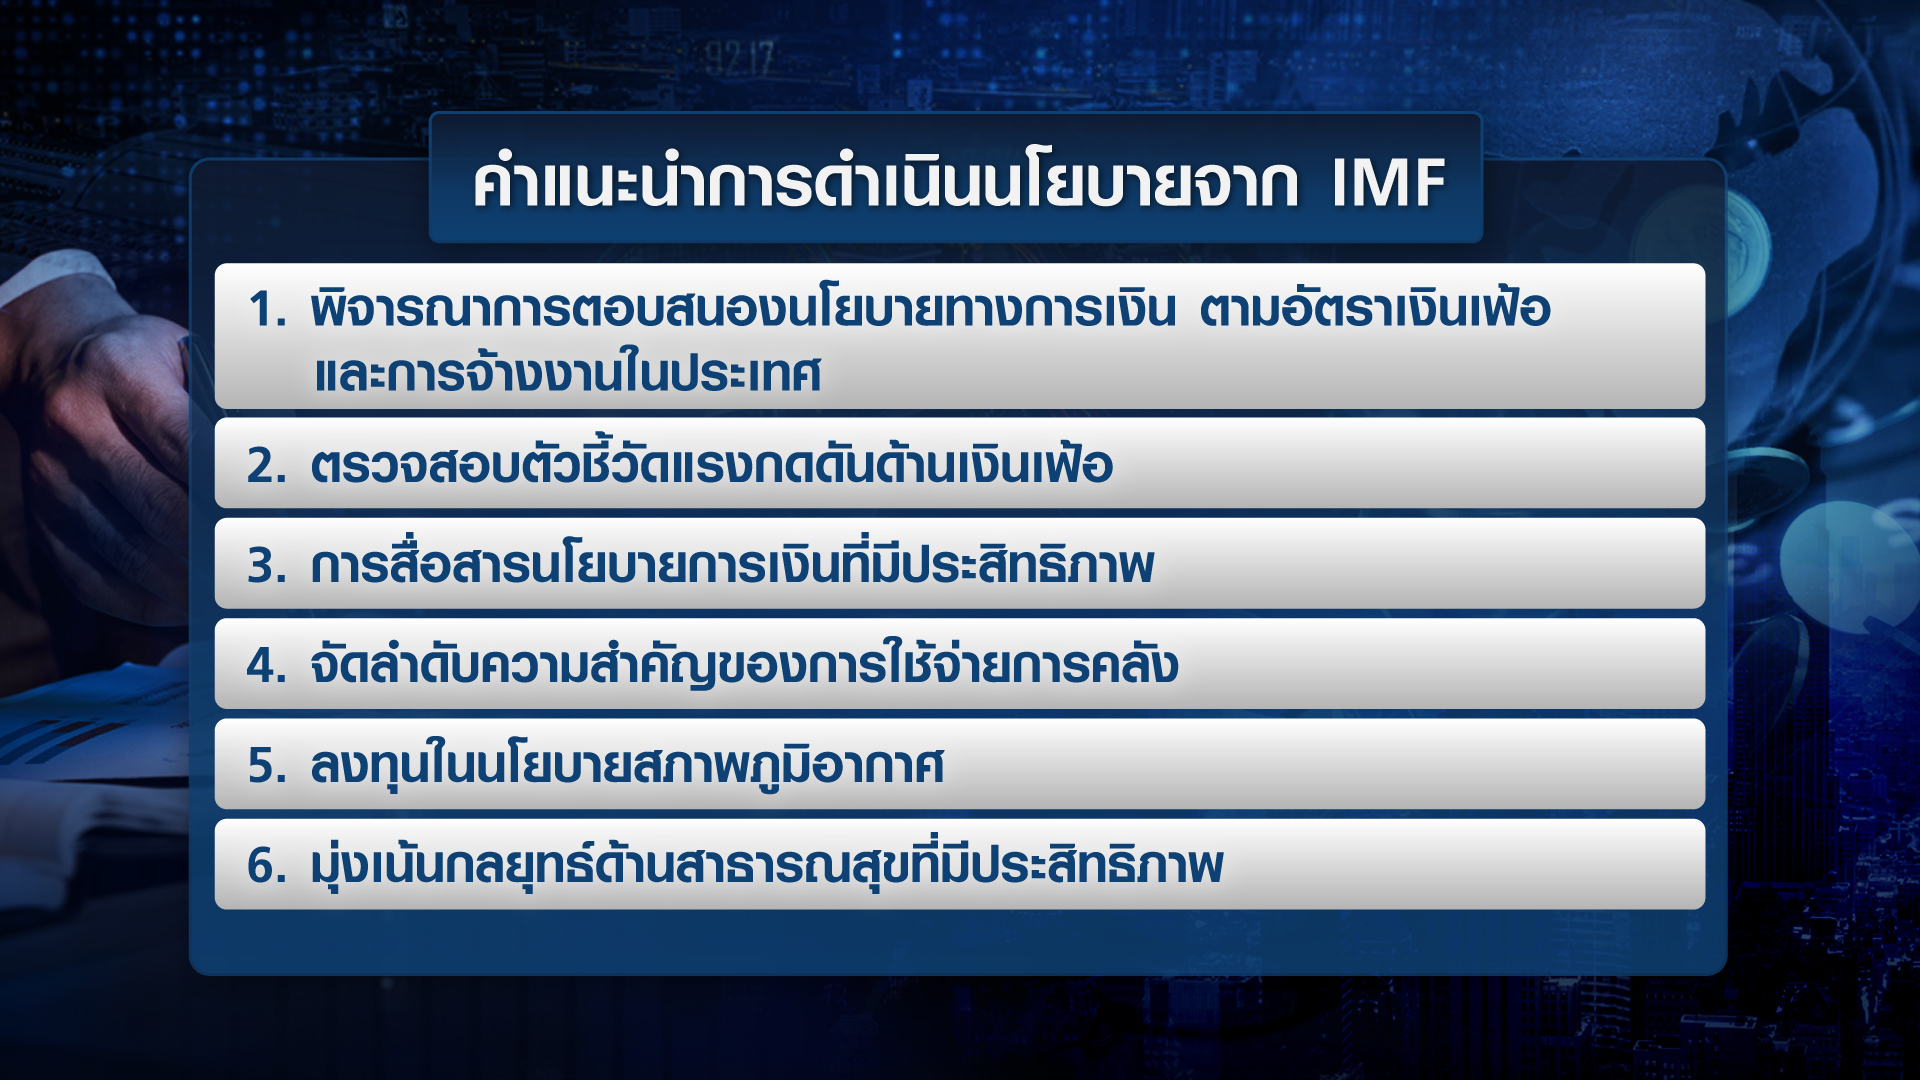 เปิดมุมมอง IMF ต่อเงินเฟ้อ-นโยบายการเงินเอเชีย | TNN Wealth 08-02-65